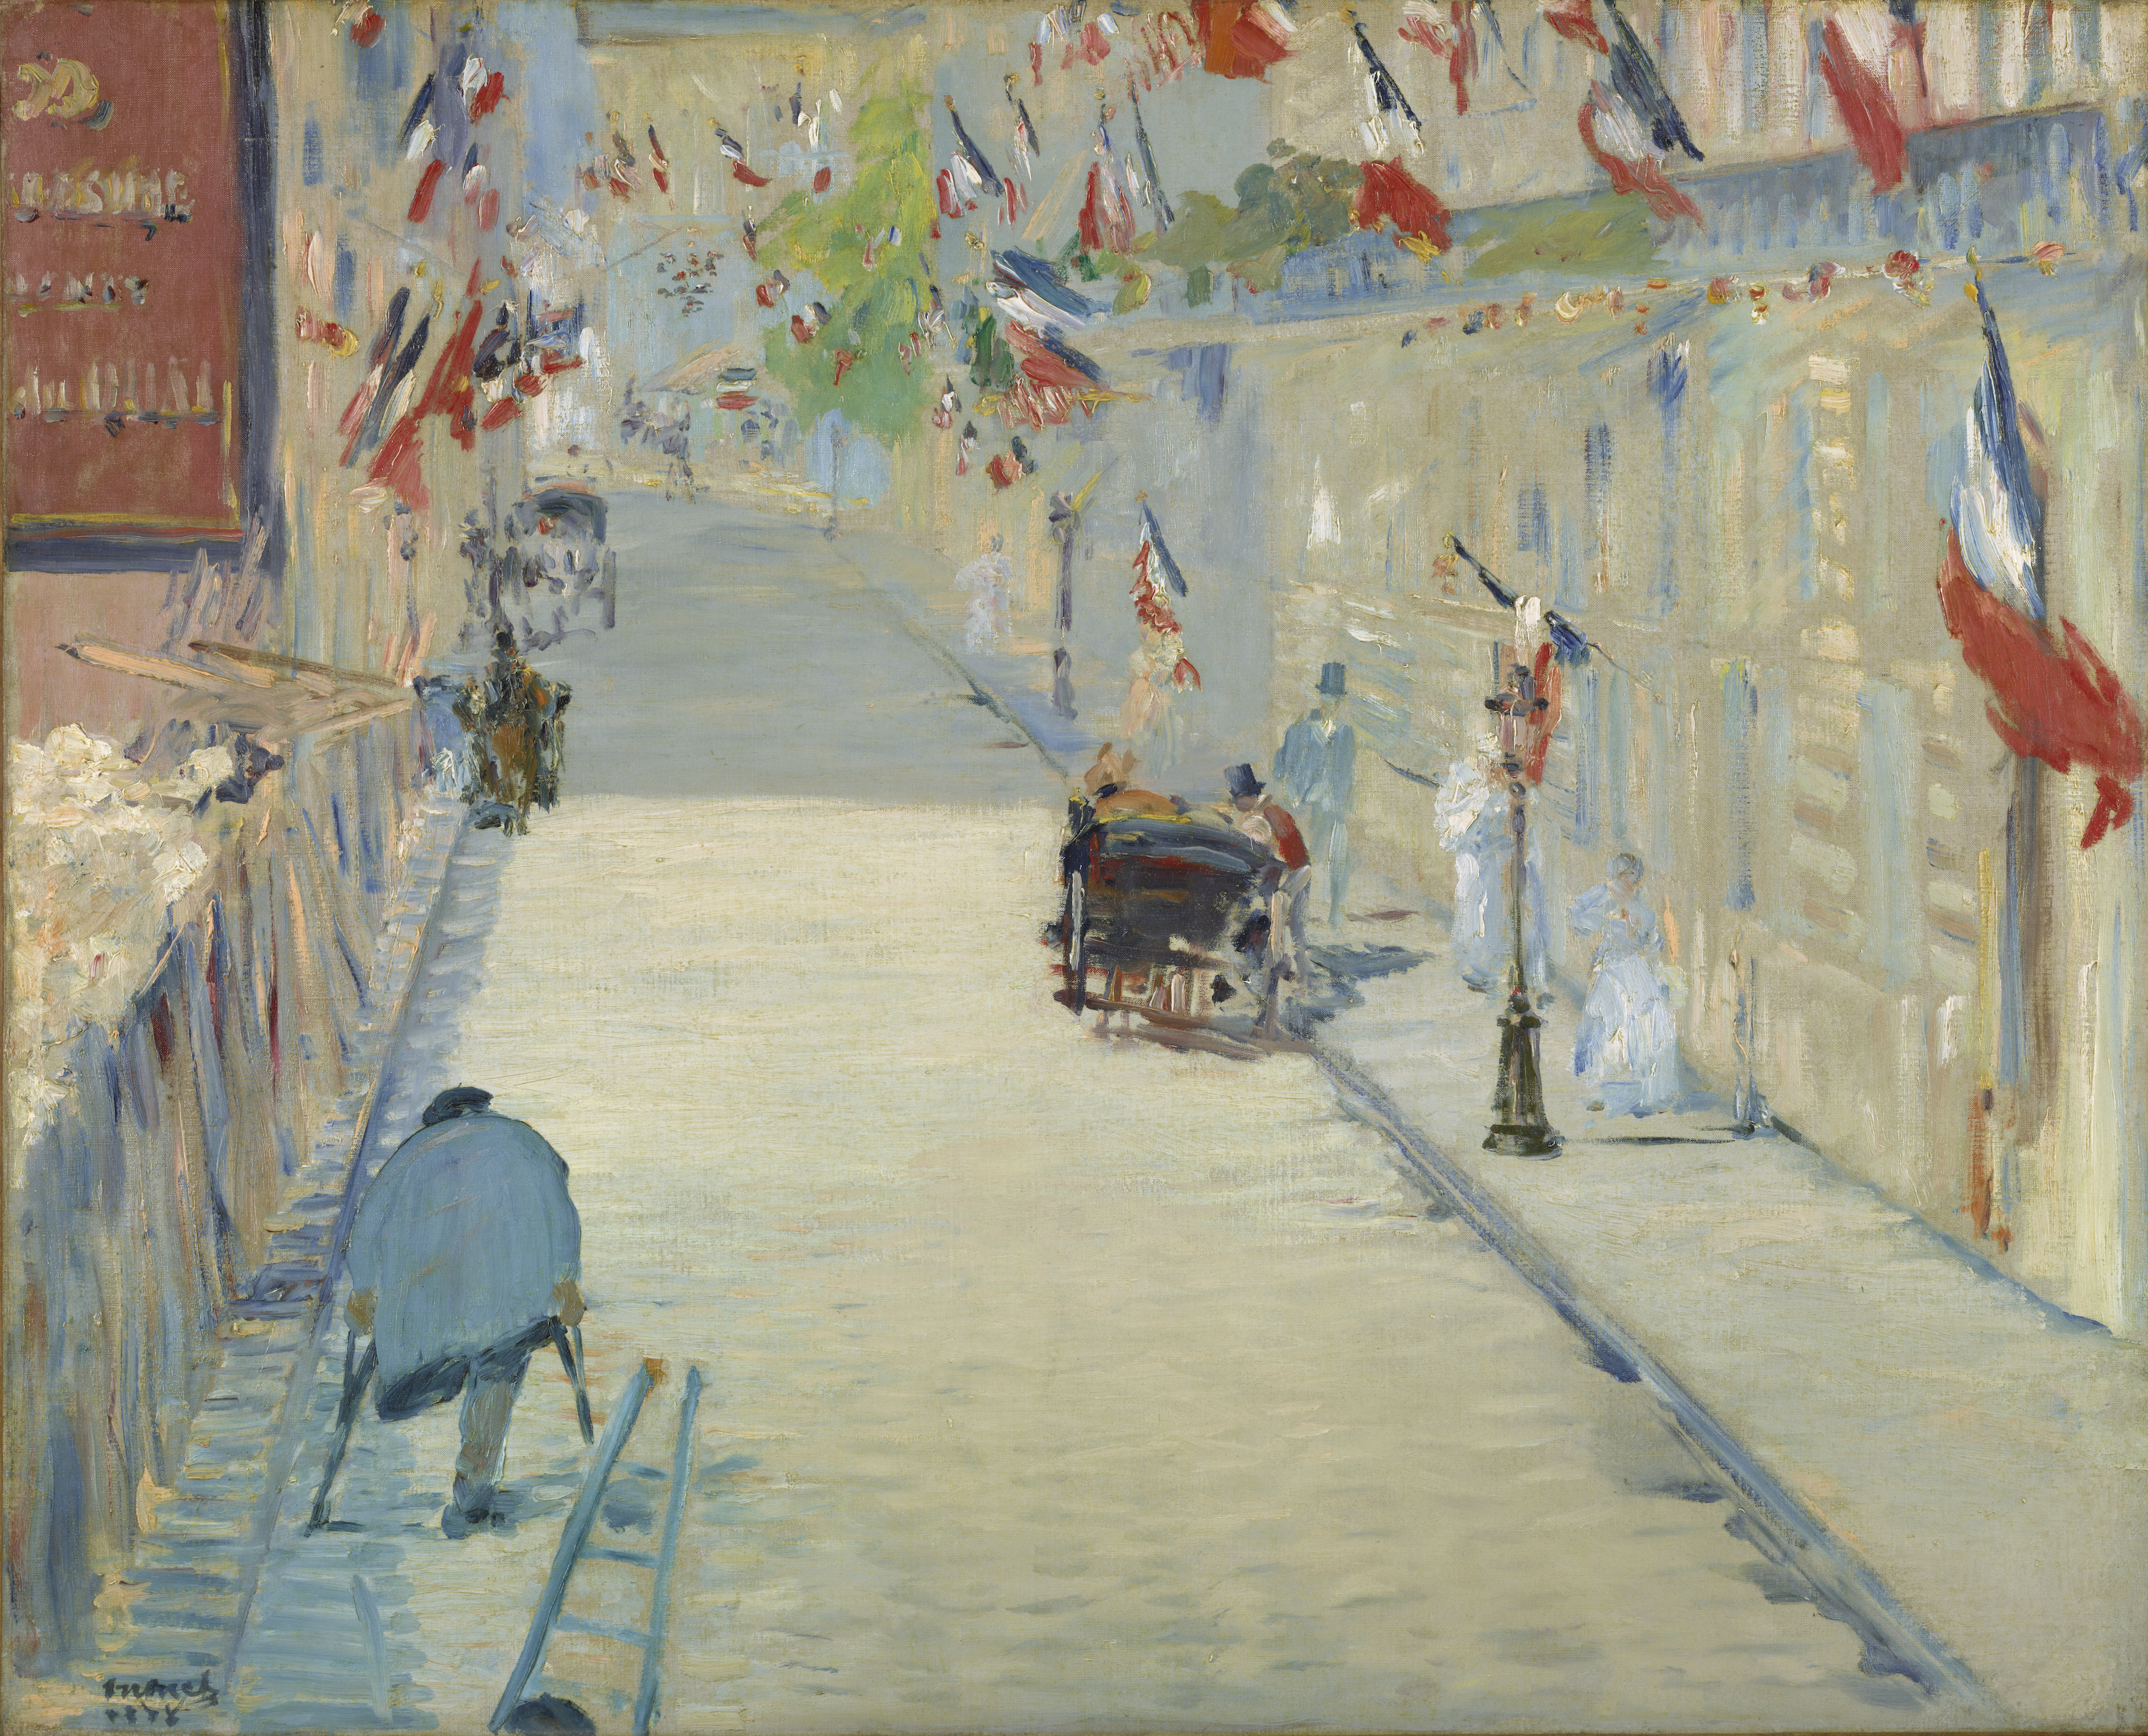 A Mosnier utca zászlókkal by Édouard Manet - 1878 - 80 x 65,4 cm 